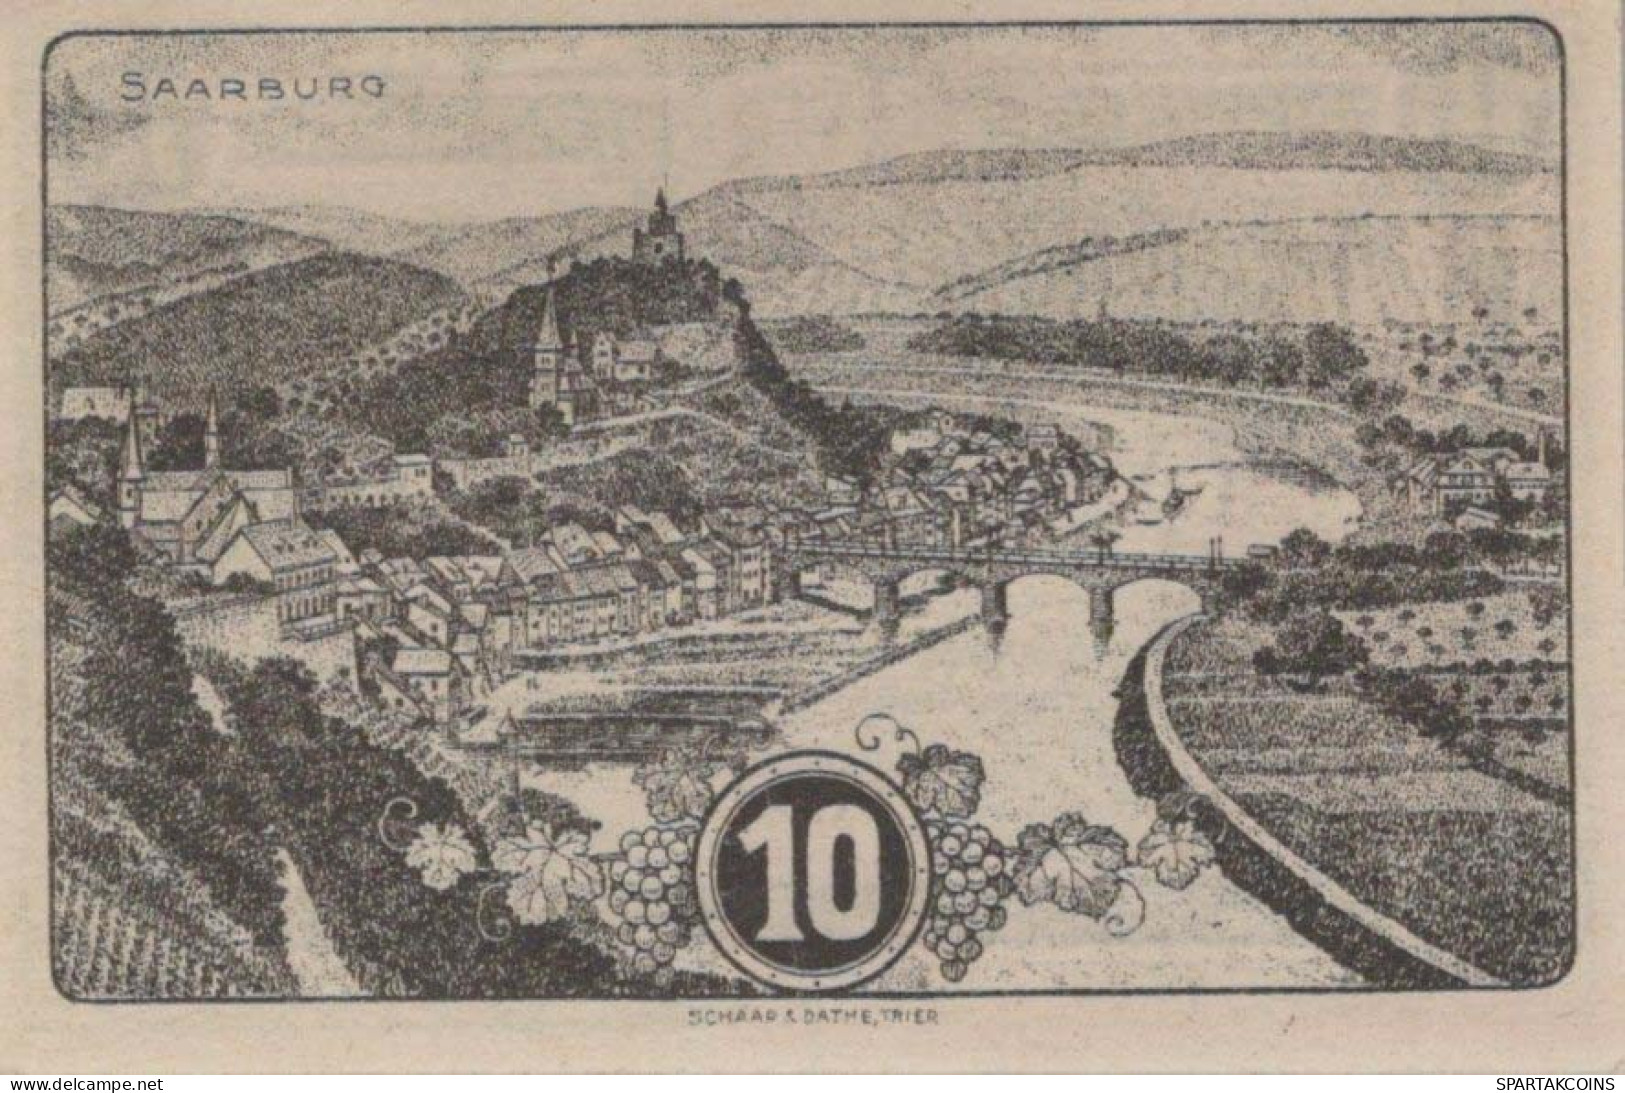 10 PFENNIG 1920 Stadt SAARBURG Rhine UNC DEUTSCHLAND Notgeld Banknote #PJ056 - Lokale Ausgaben